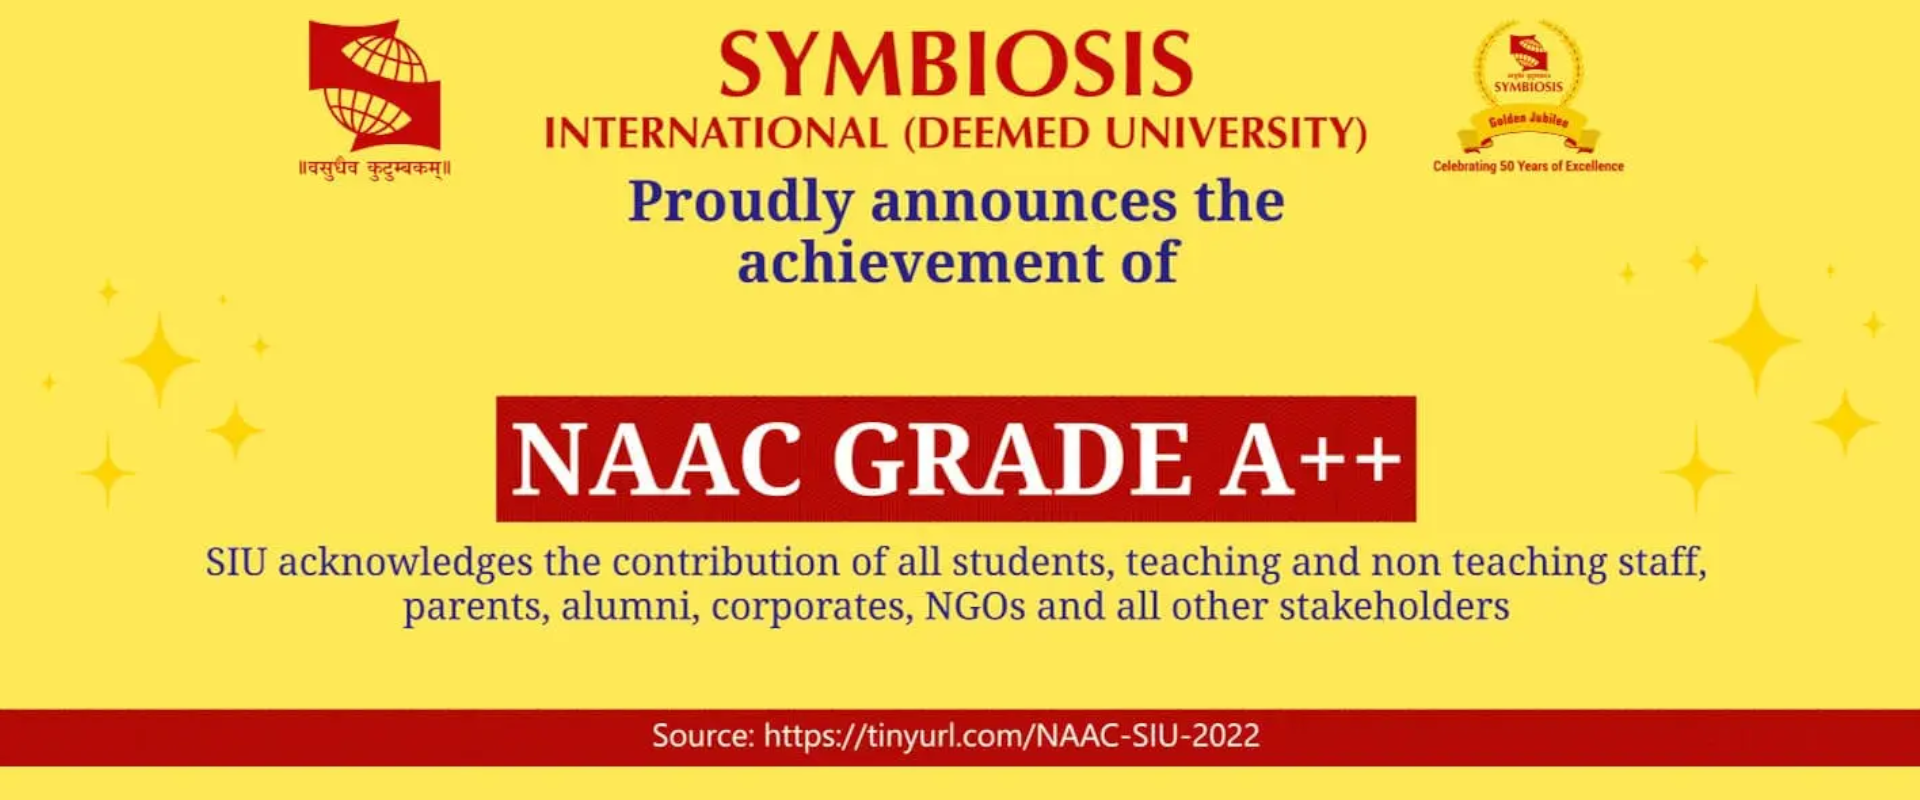 Symbiosis University NACC A++